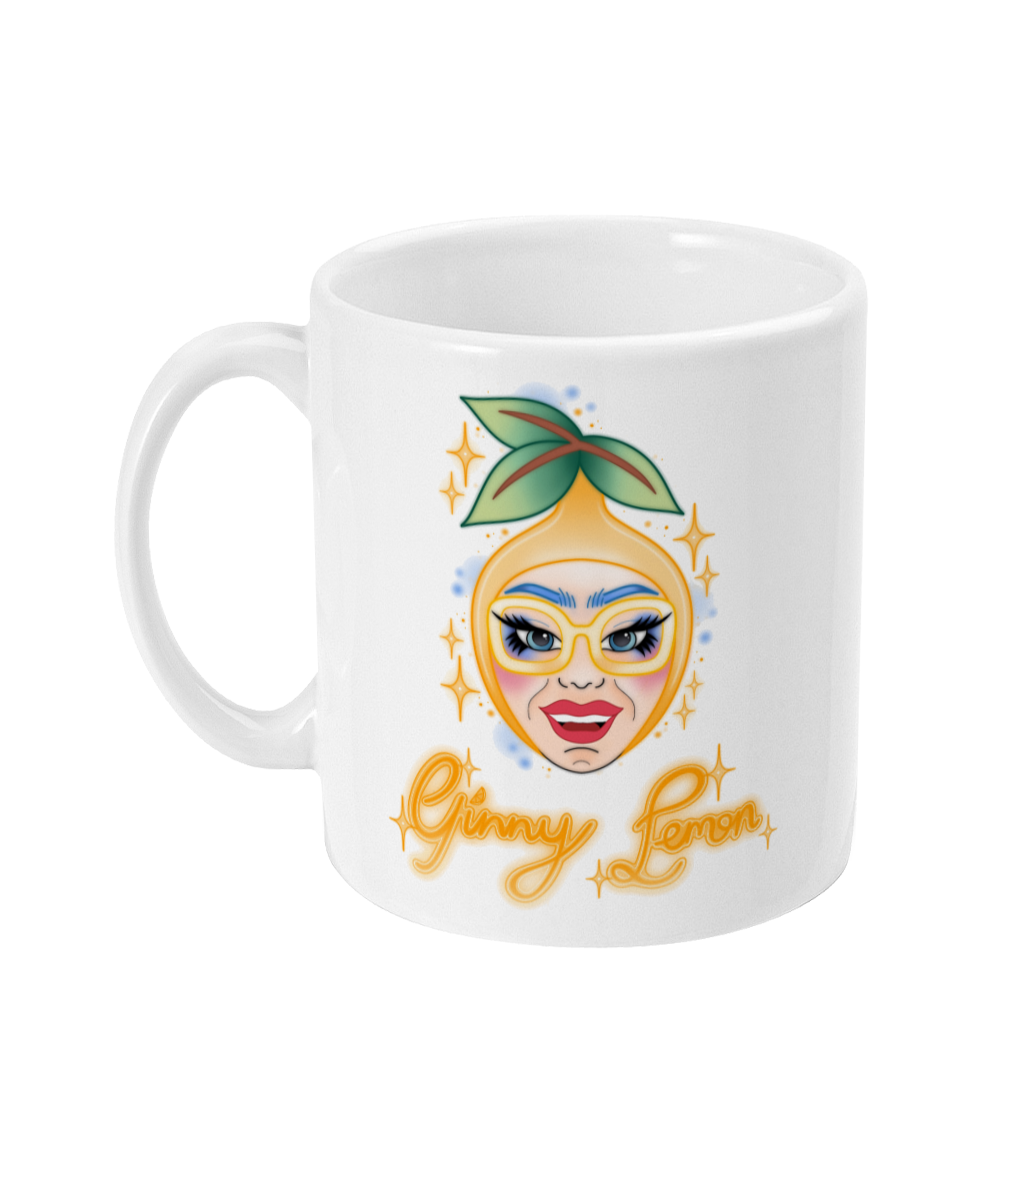 Ginny Lemon - Lemon Head Mug